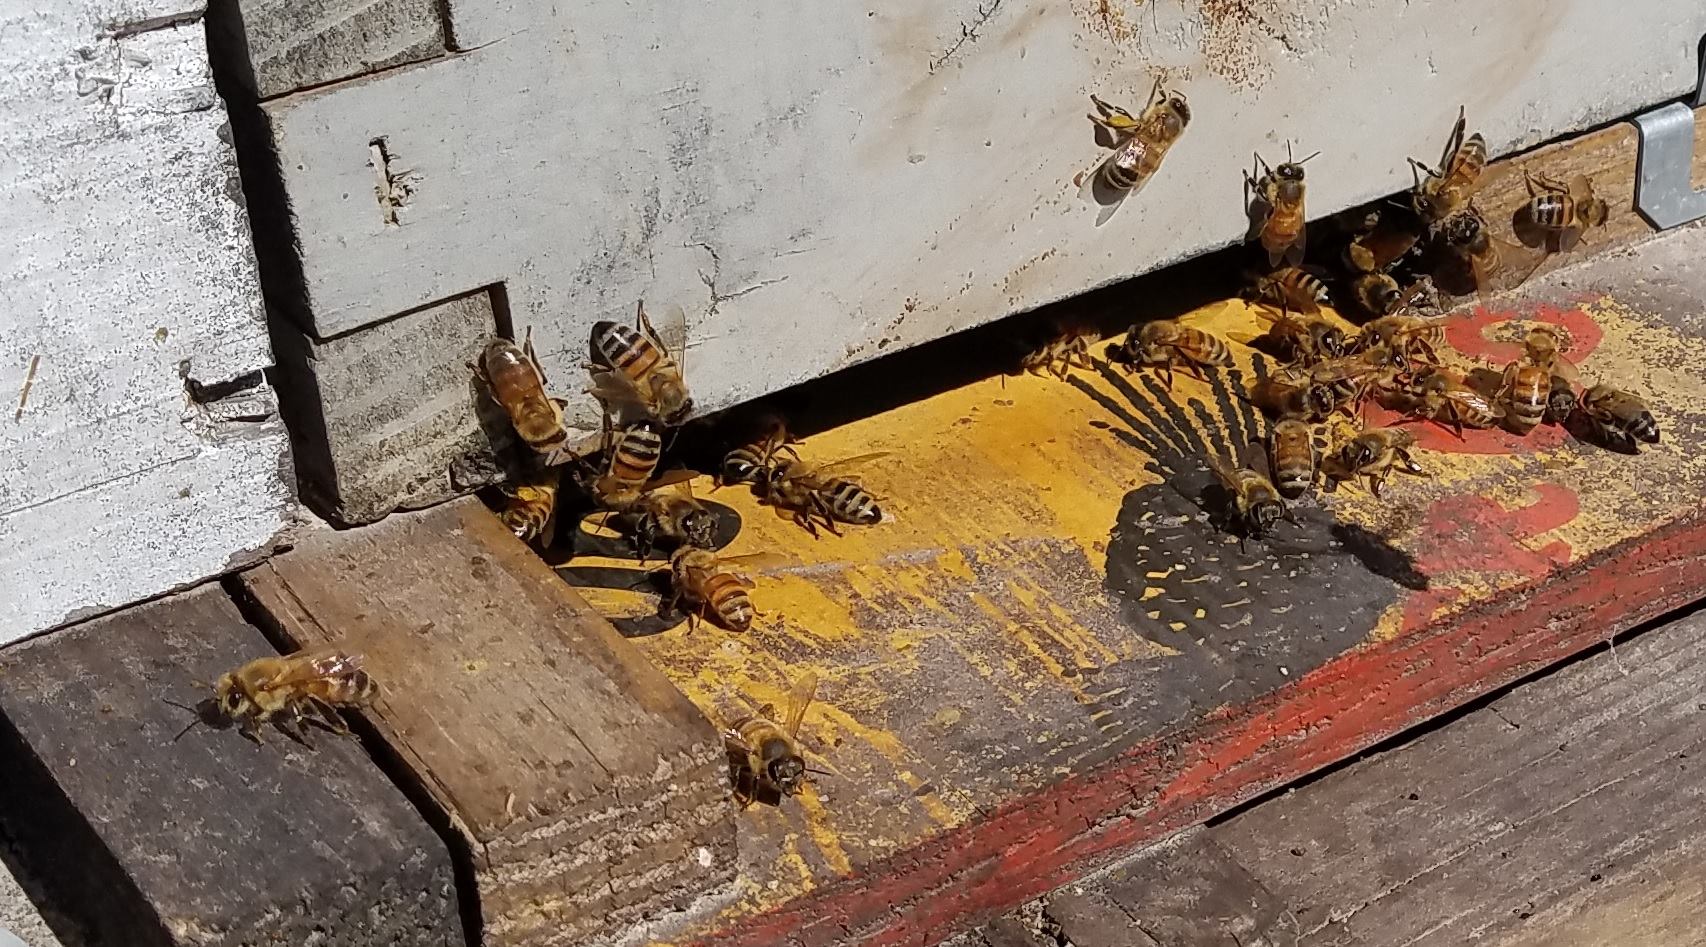 Пчелы атаковали